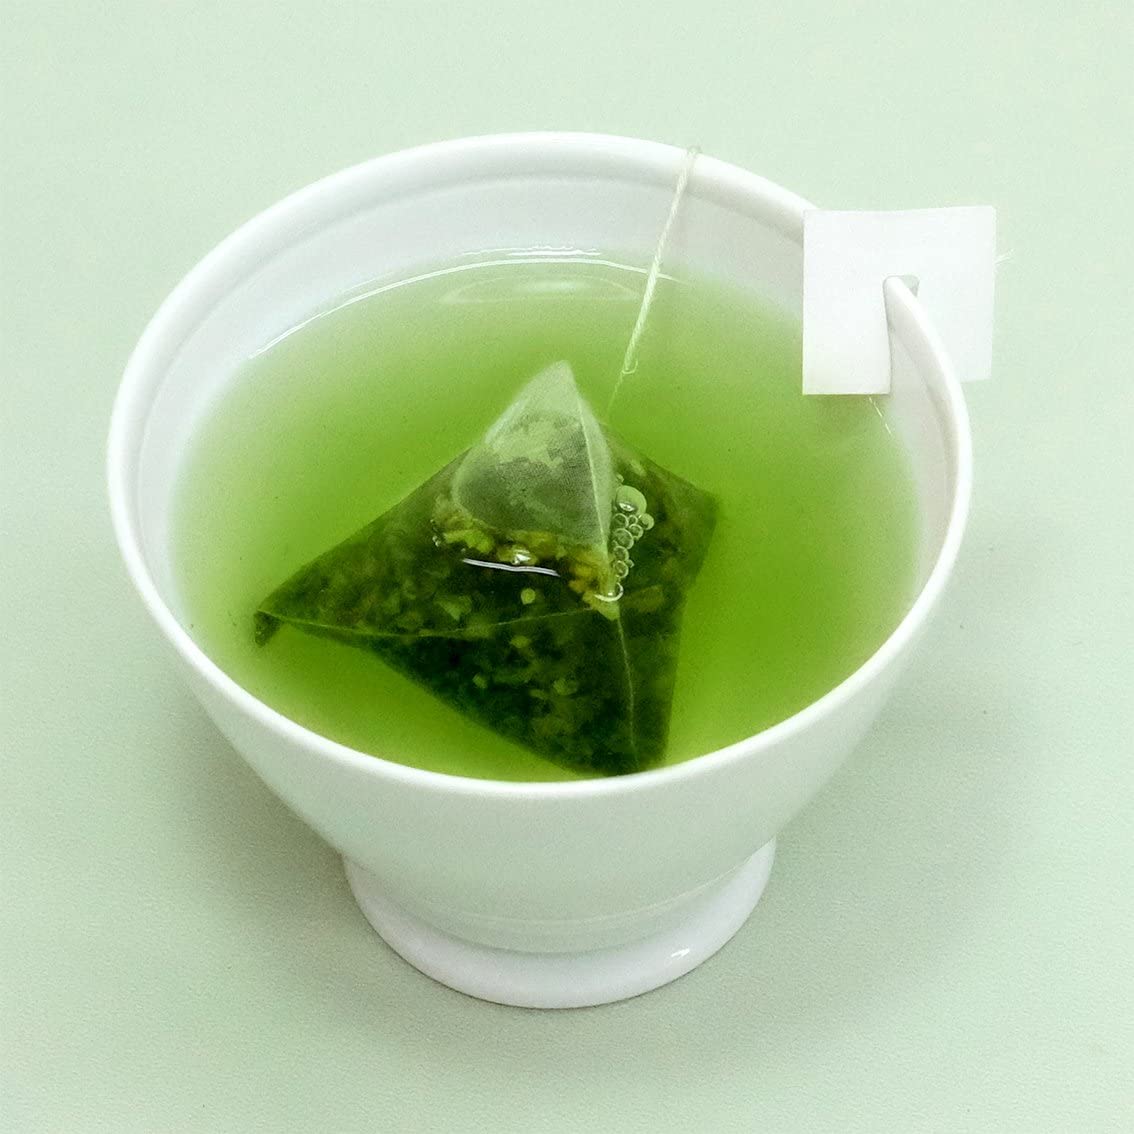 Ito En Triangle Tea House 50 Green Tea Bags with Matcha - NihonMura